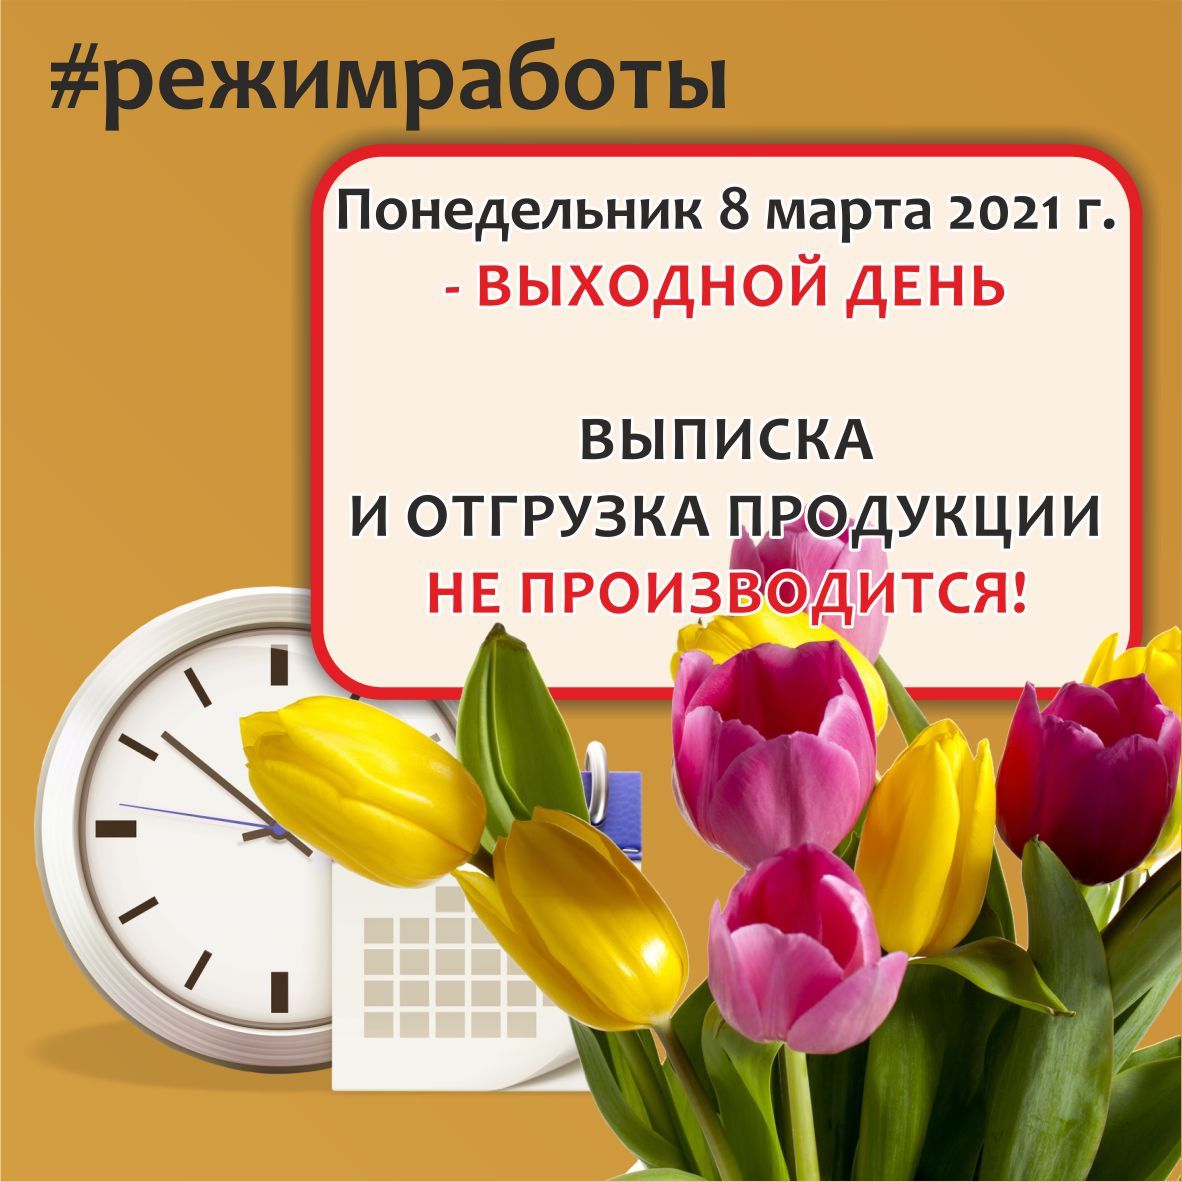 Режим работы АО "Завод ЖБК-1" 8 марта